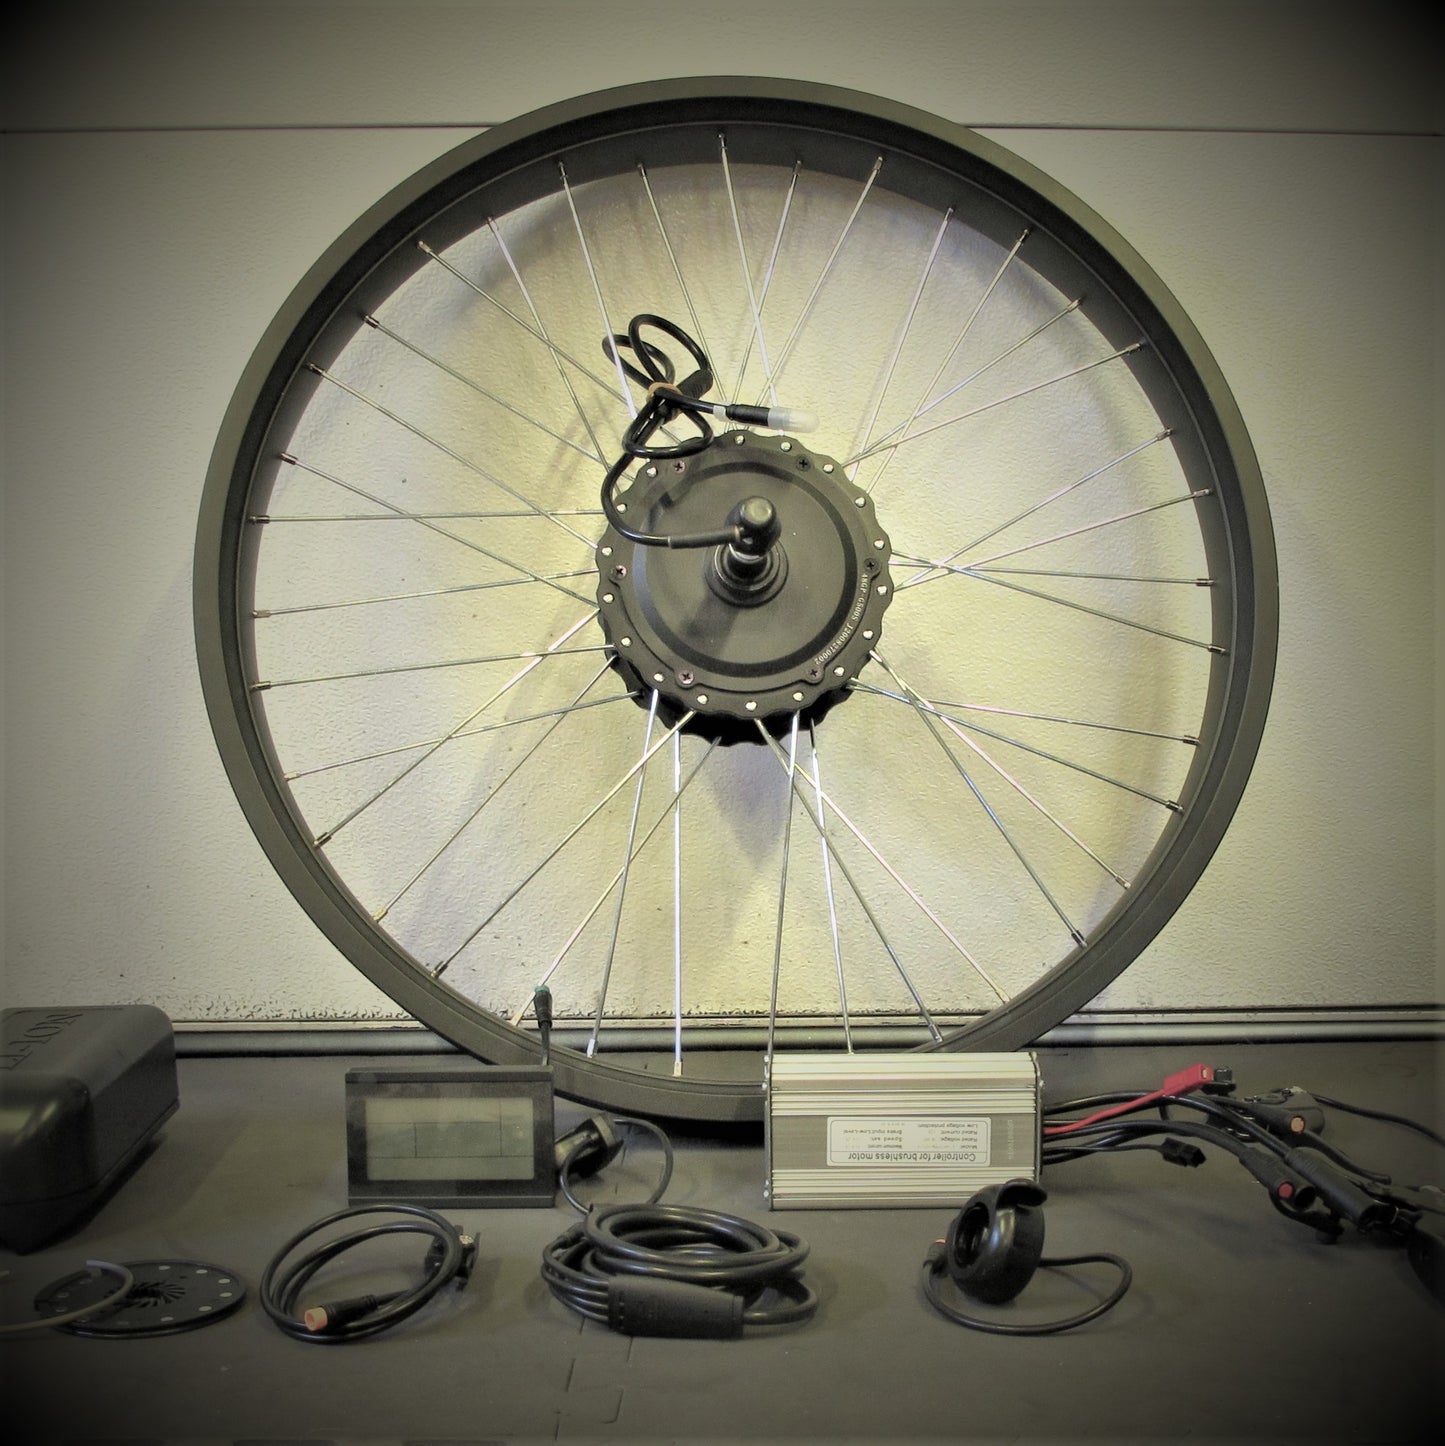 26’’ Fat Wheel Electric Motor Kit  750W Geared Hub